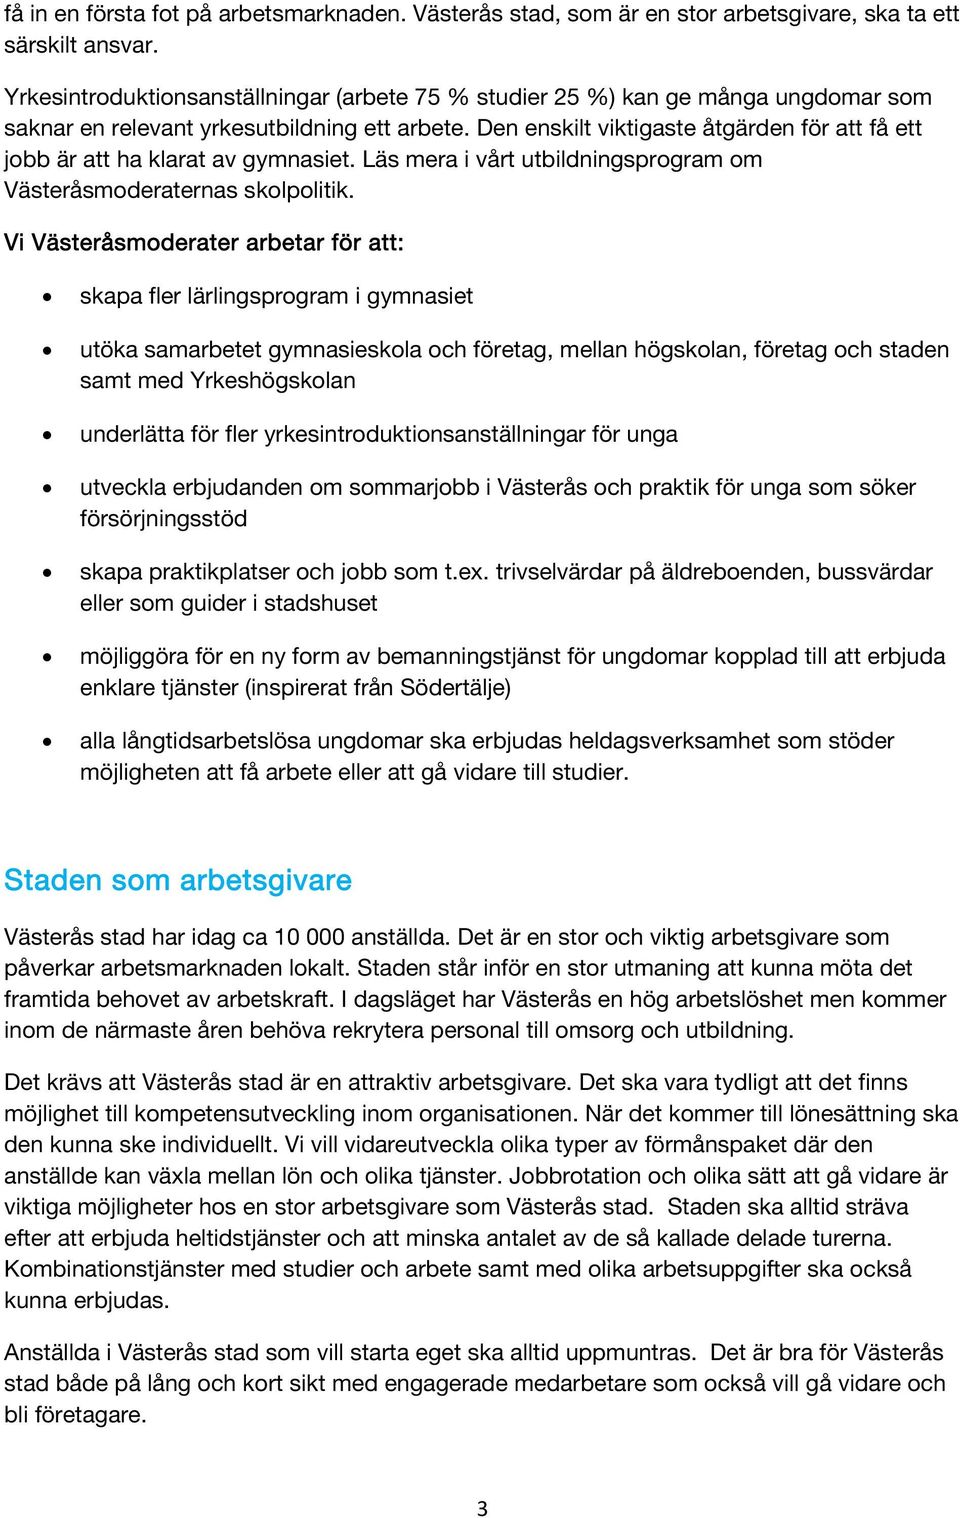 Den enskilt viktigaste åtgärden för att få ett jobb är att ha klarat av gymnasiet. Läs mera i vårt utbildningsprogram om Västeråsmoderaternas skolpolitik.